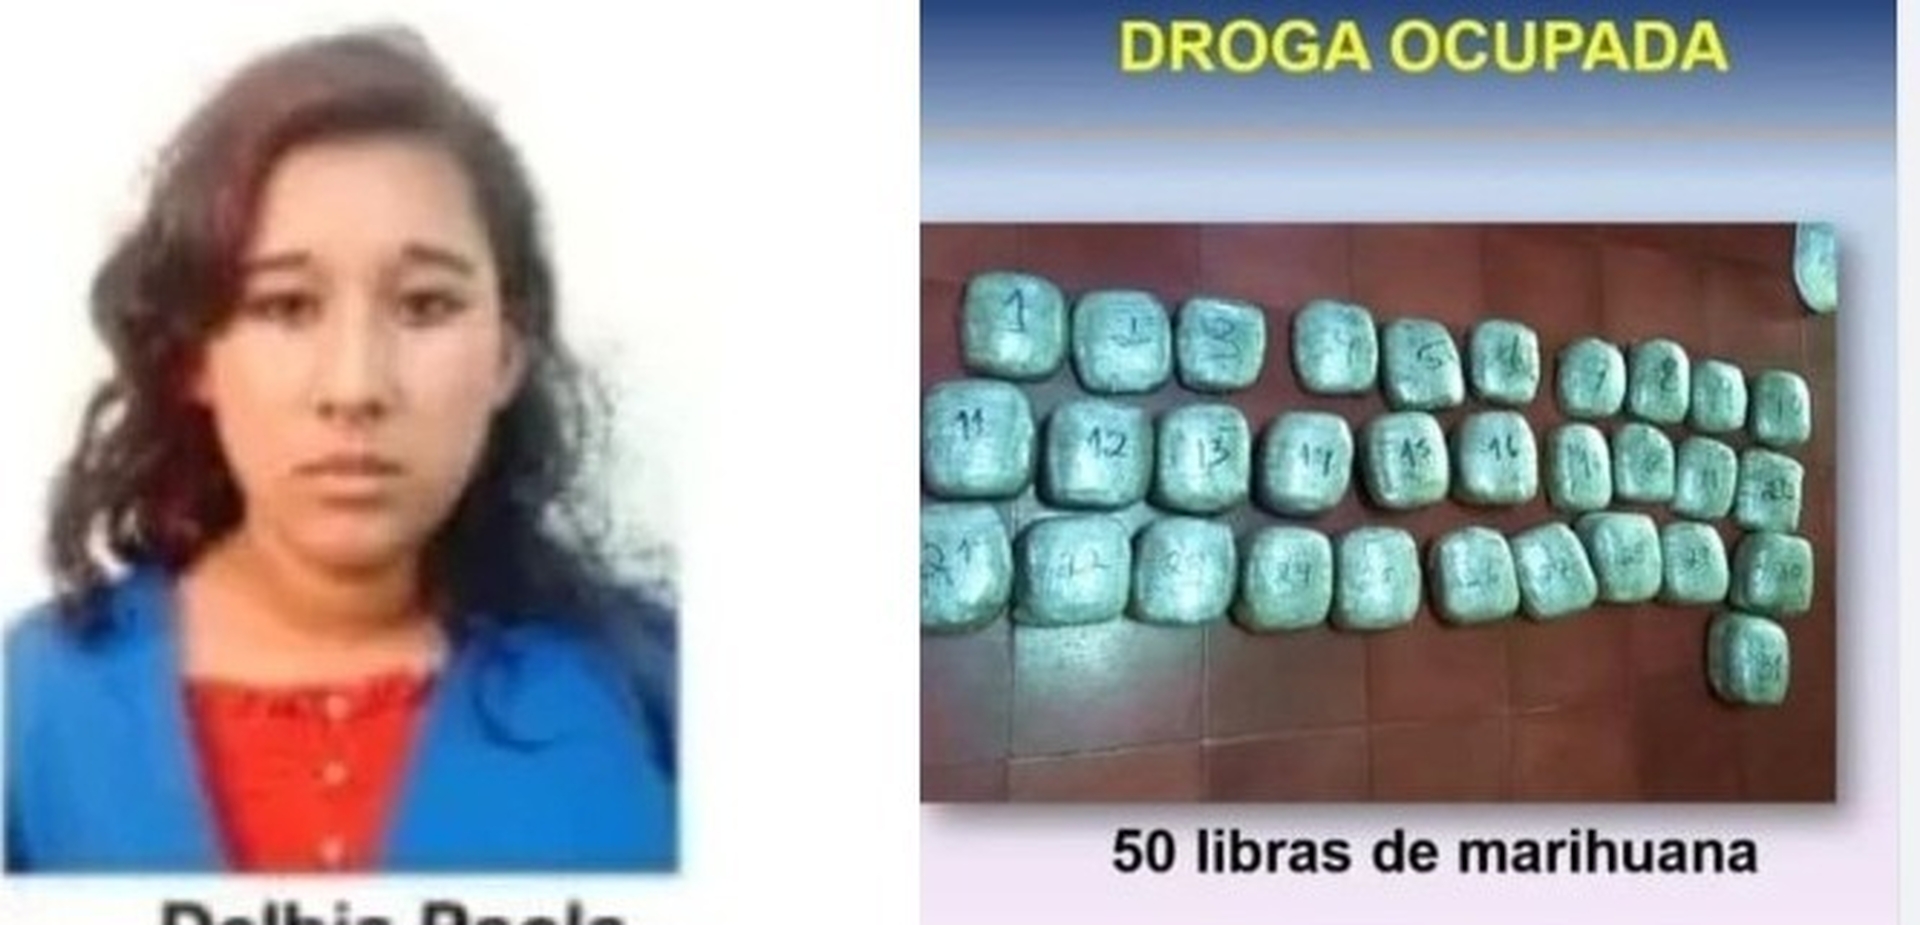 La apresada fue capturada el pasado 21 de febrero de este año, cerca de la gasolinera Puma en Estelí, donde se le ocupó 50 libras de marihuana, un celular y 3 mil 140 córdobas.